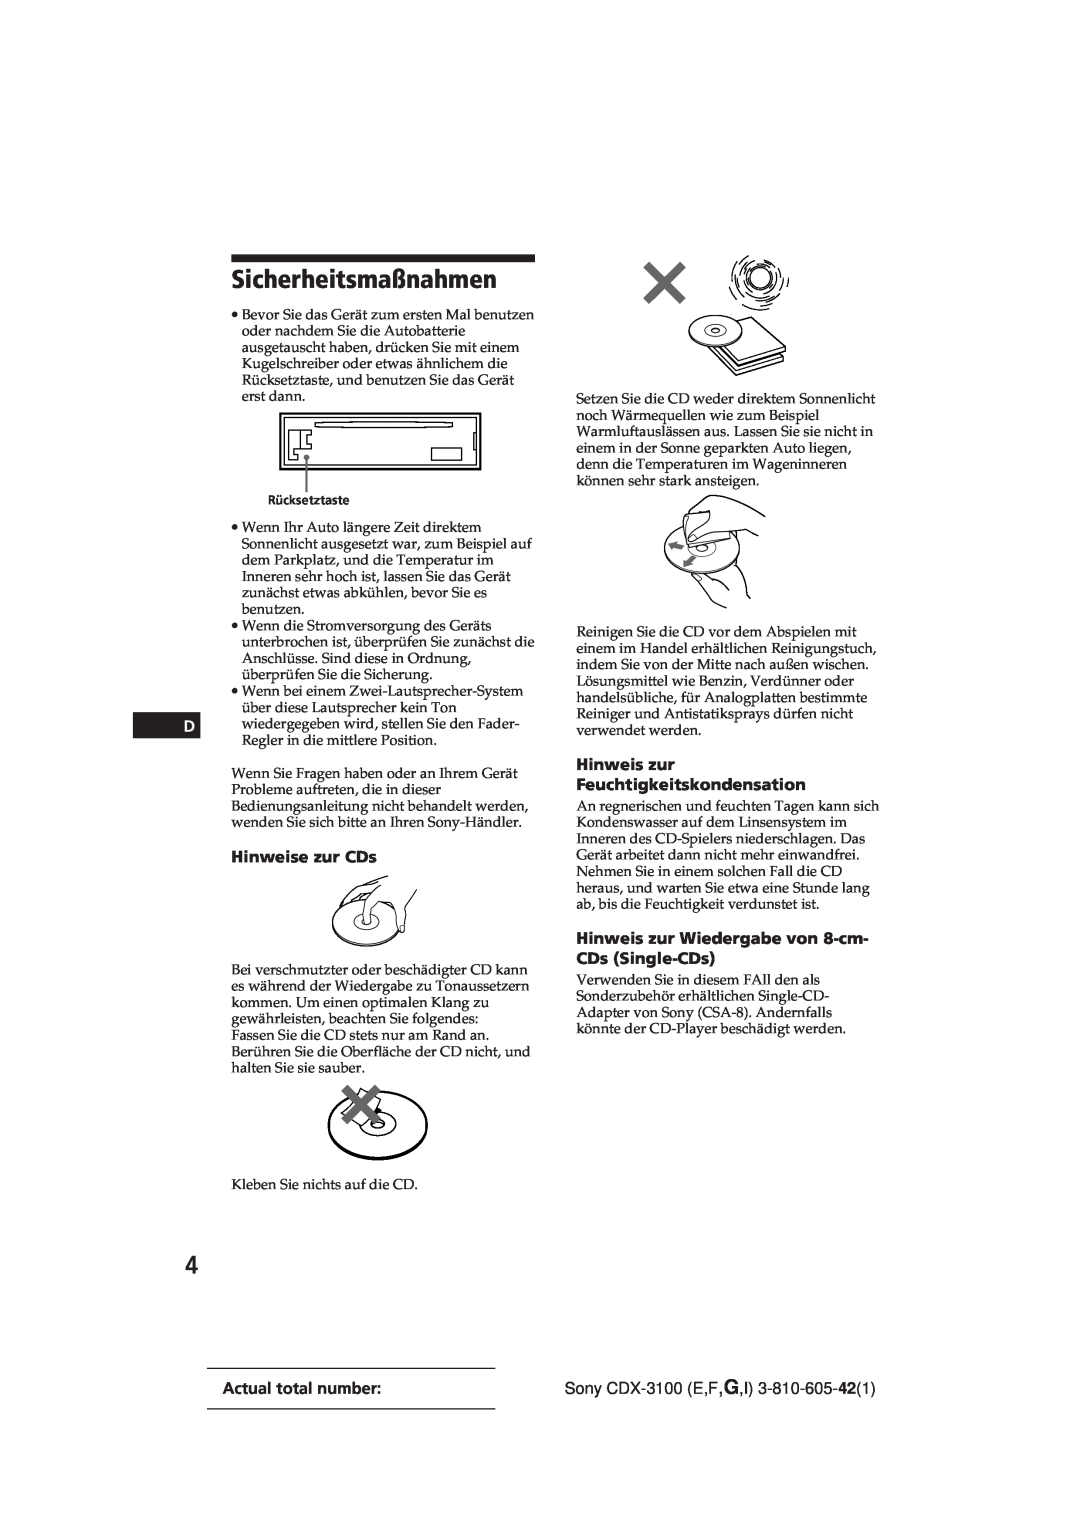 Sony manual Sicherheitsmaßnahmen, Hinweise zur CDs, Hinweis zur Feuchtigkeitskondensation, Sony CDX-3100E,F,G,I 